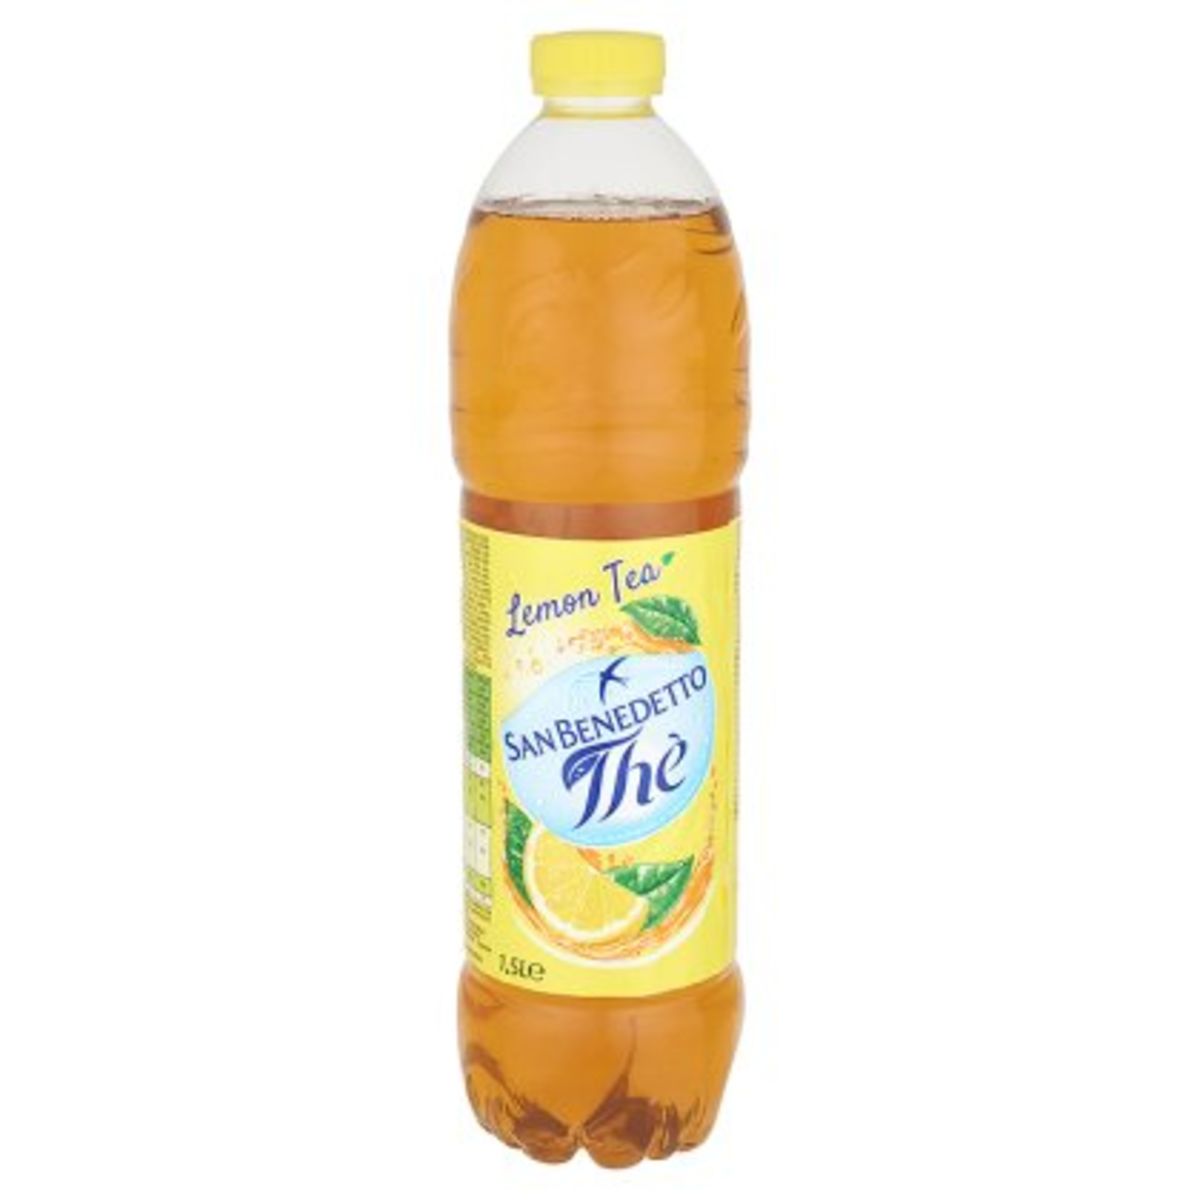 San Benedetto Thè Lemon Tea 1,5 L